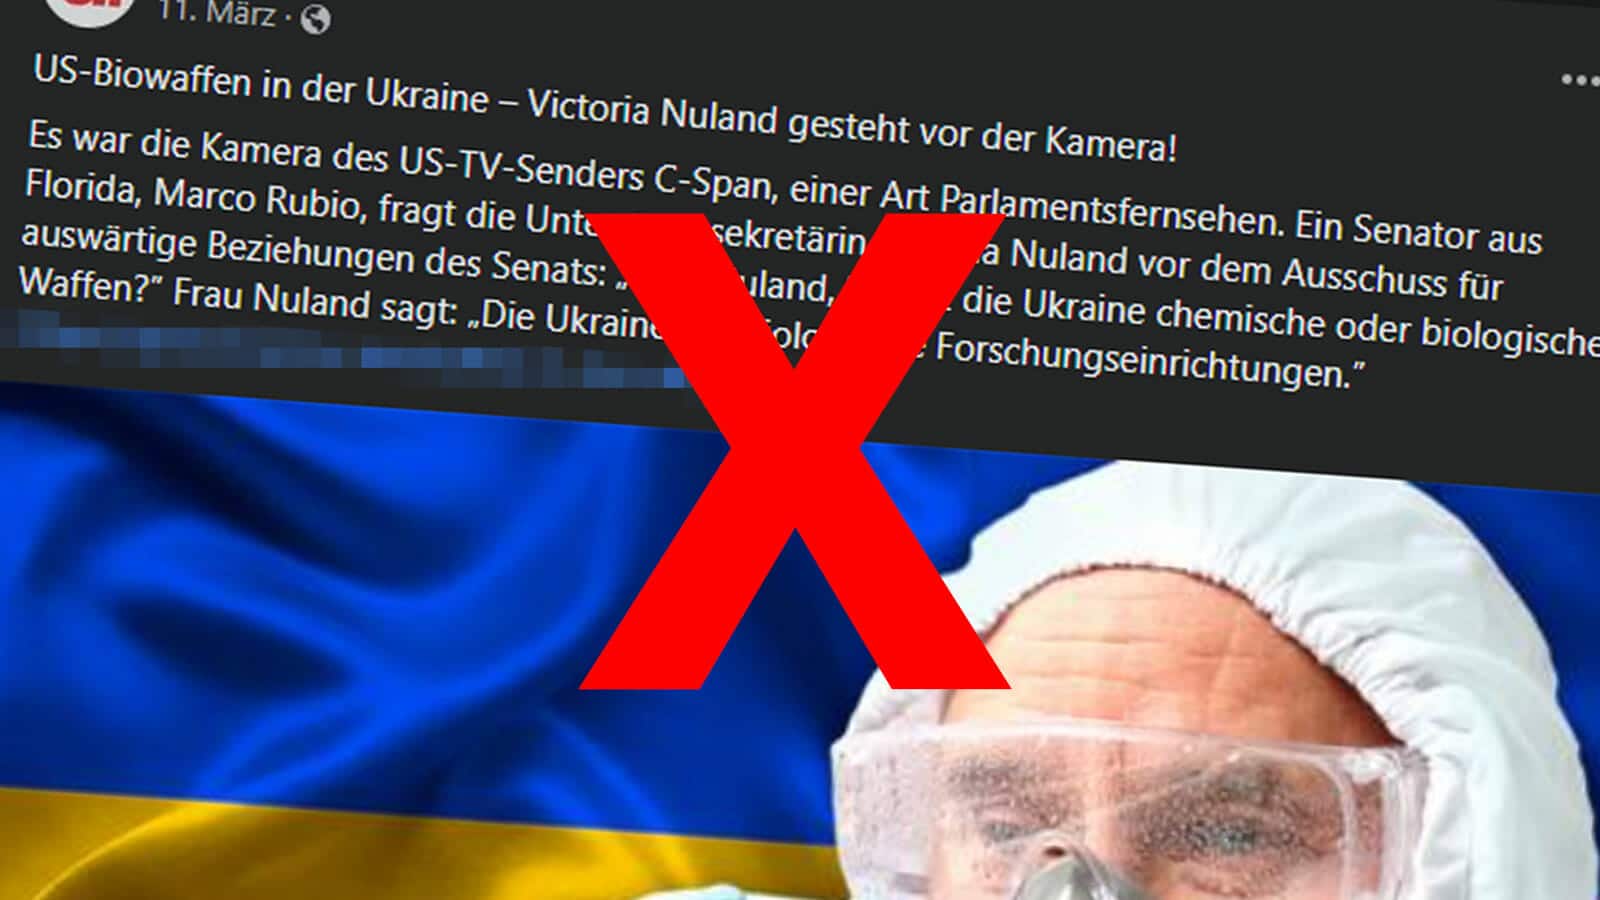 Victoria Nuland bestätigte nicht die Existenz von Biowaffenlaboren in der Ukraine.